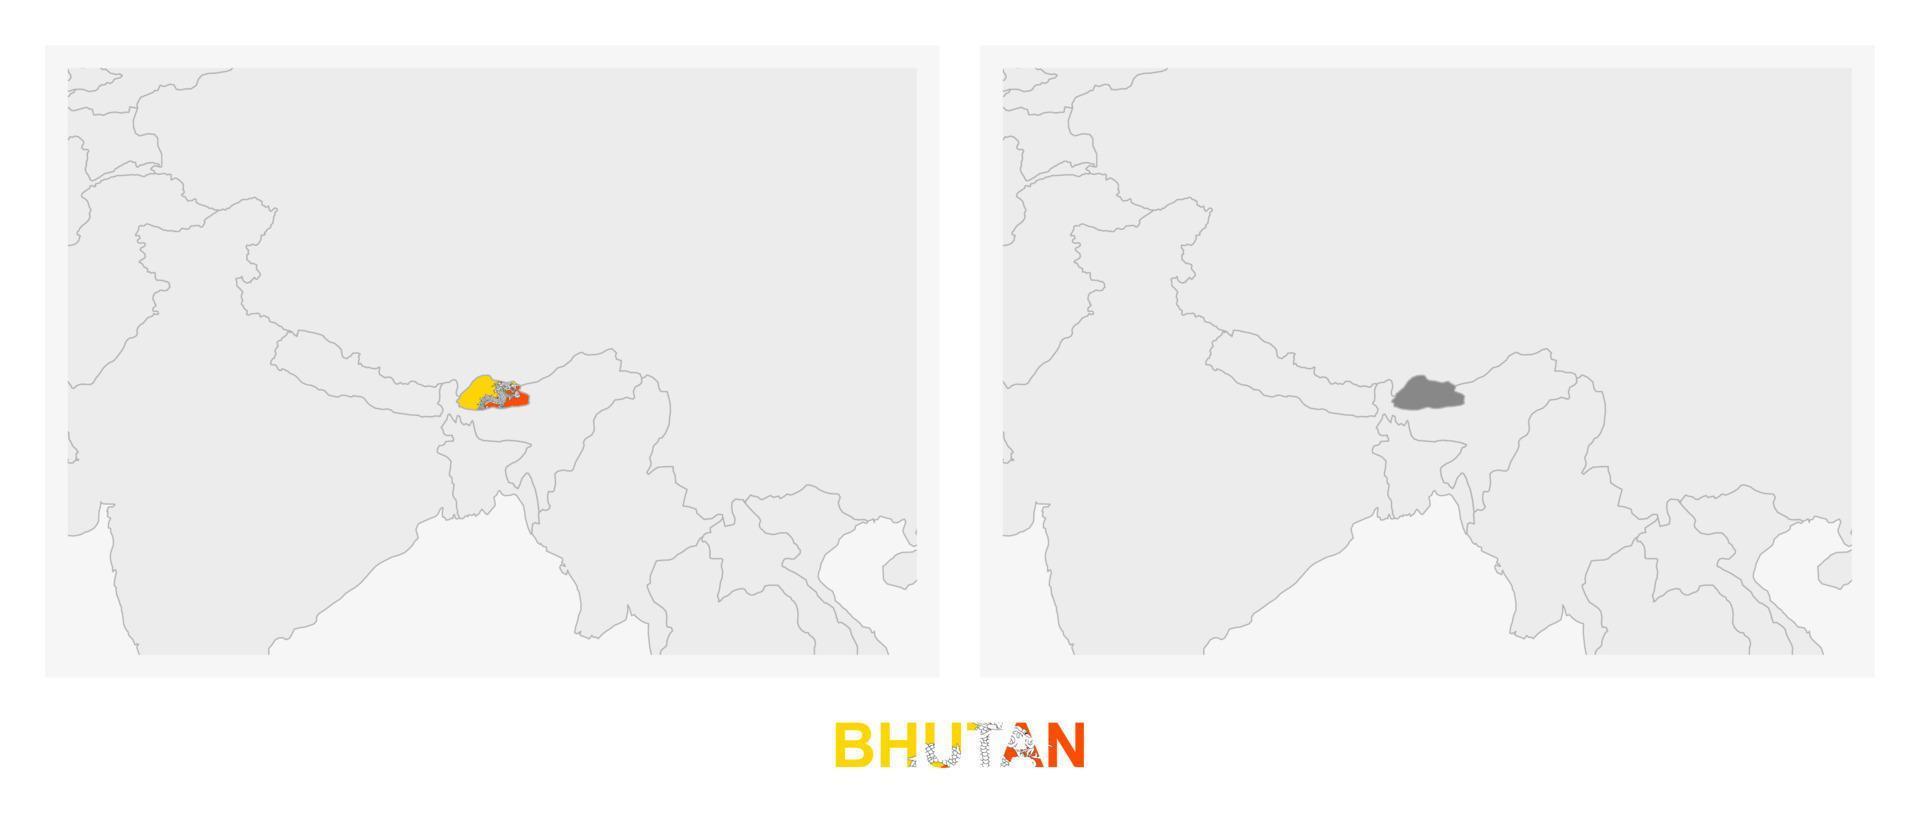 zwei versionen der karte von bhutan, mit der flagge von bhutan und dunkelgrau hervorgehoben. vektor